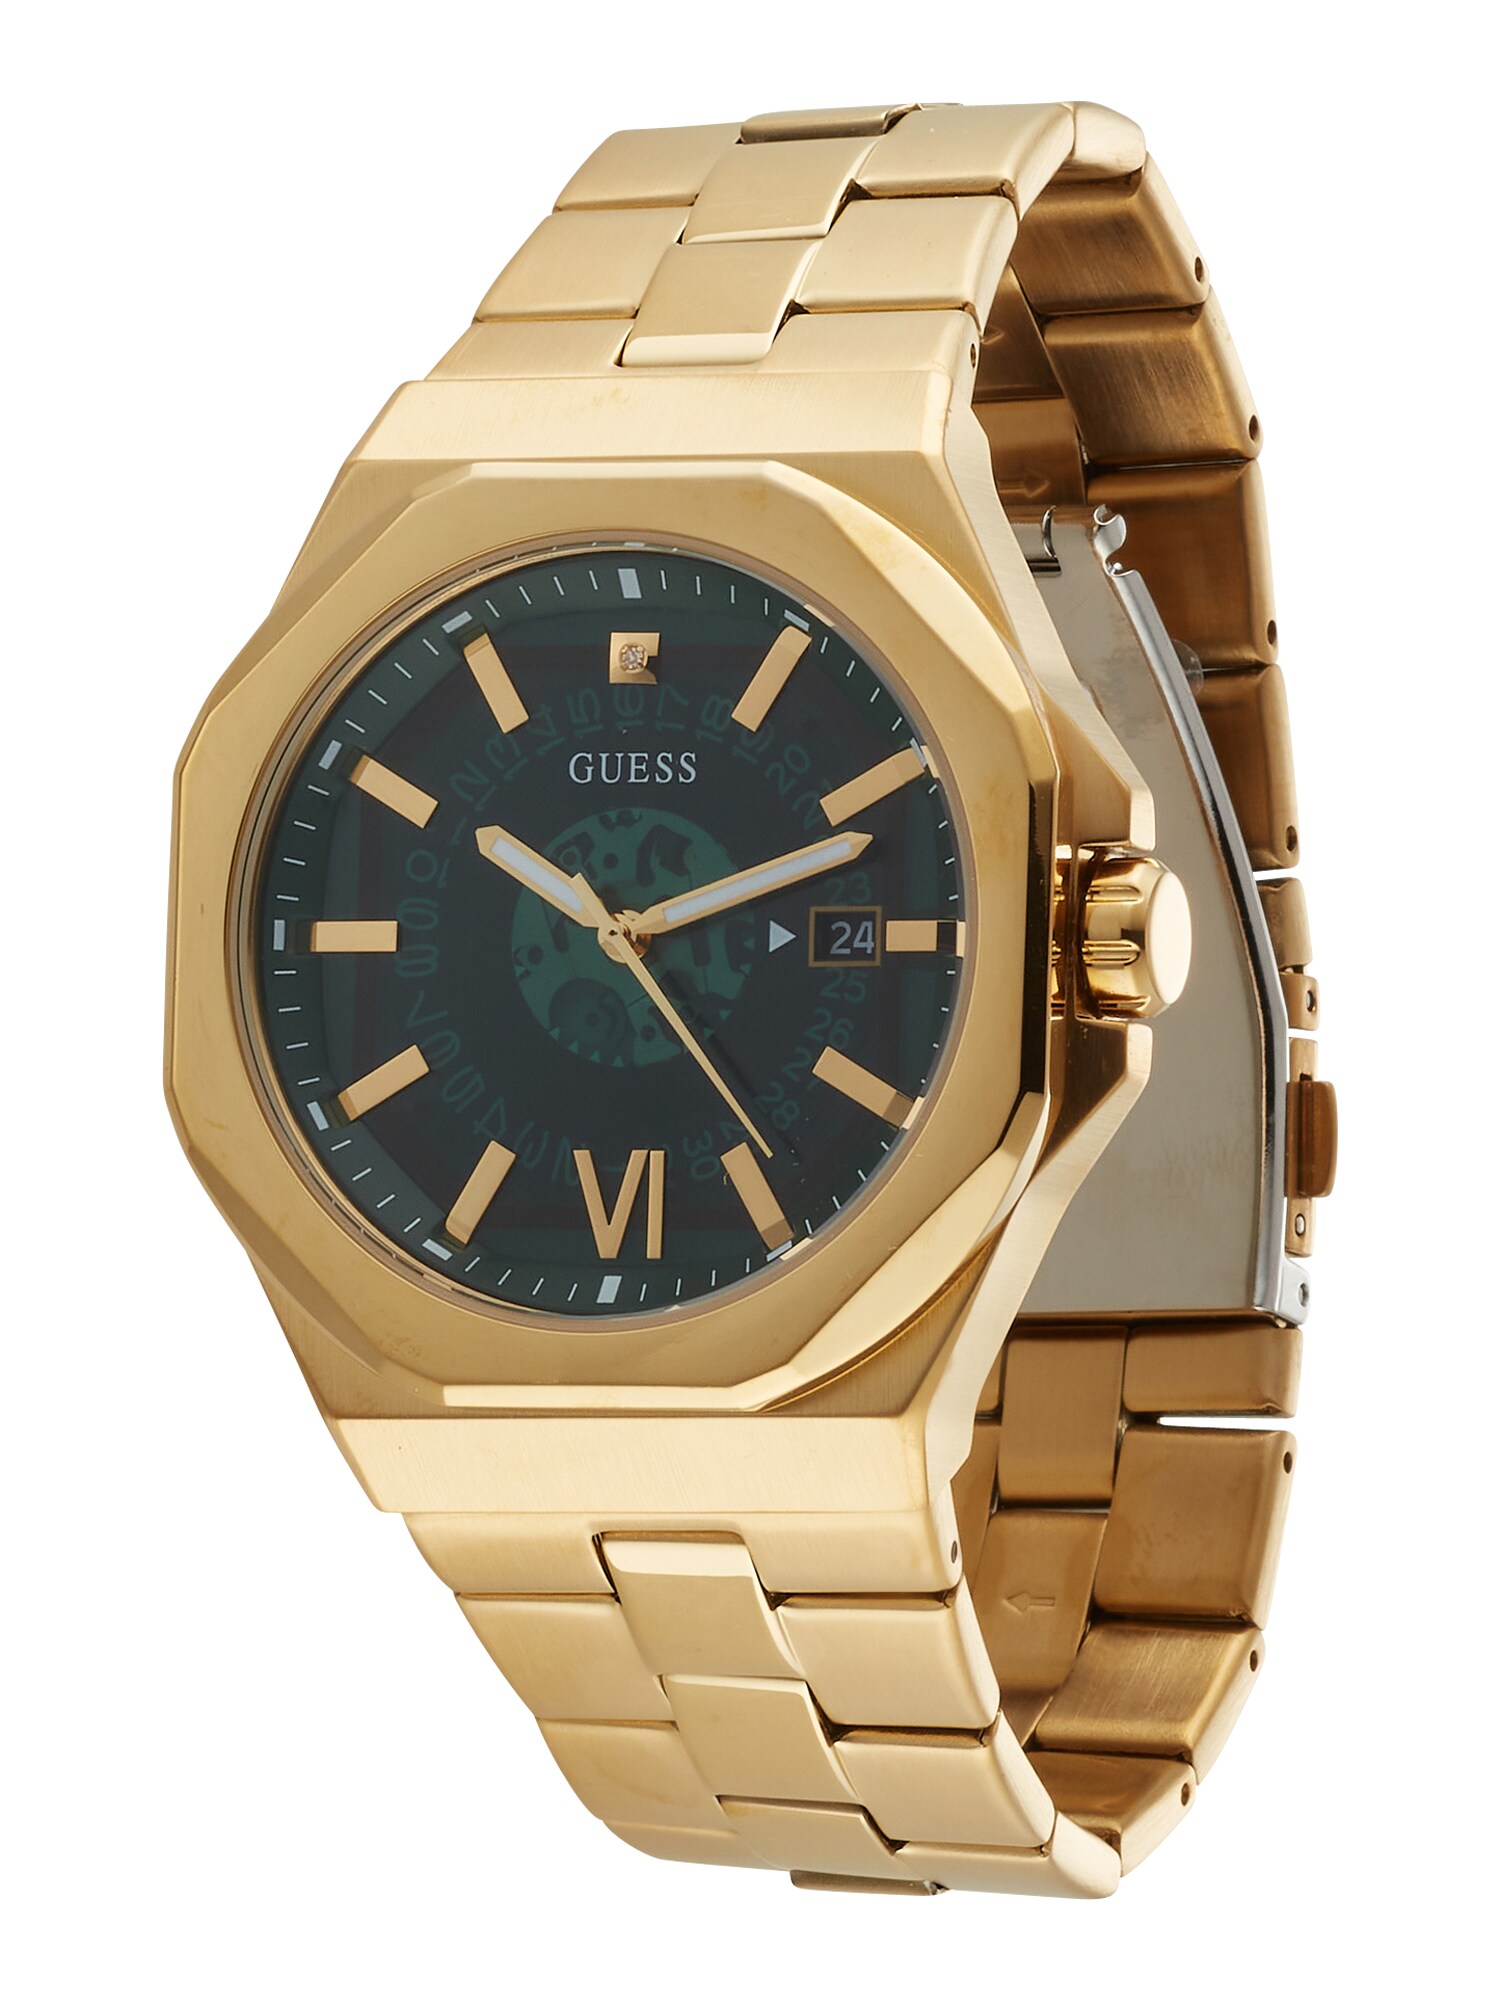 GUESS Analoginis (įprasto dizaino) laikrodis auksas / žalia / smaragdinė spalva / balta